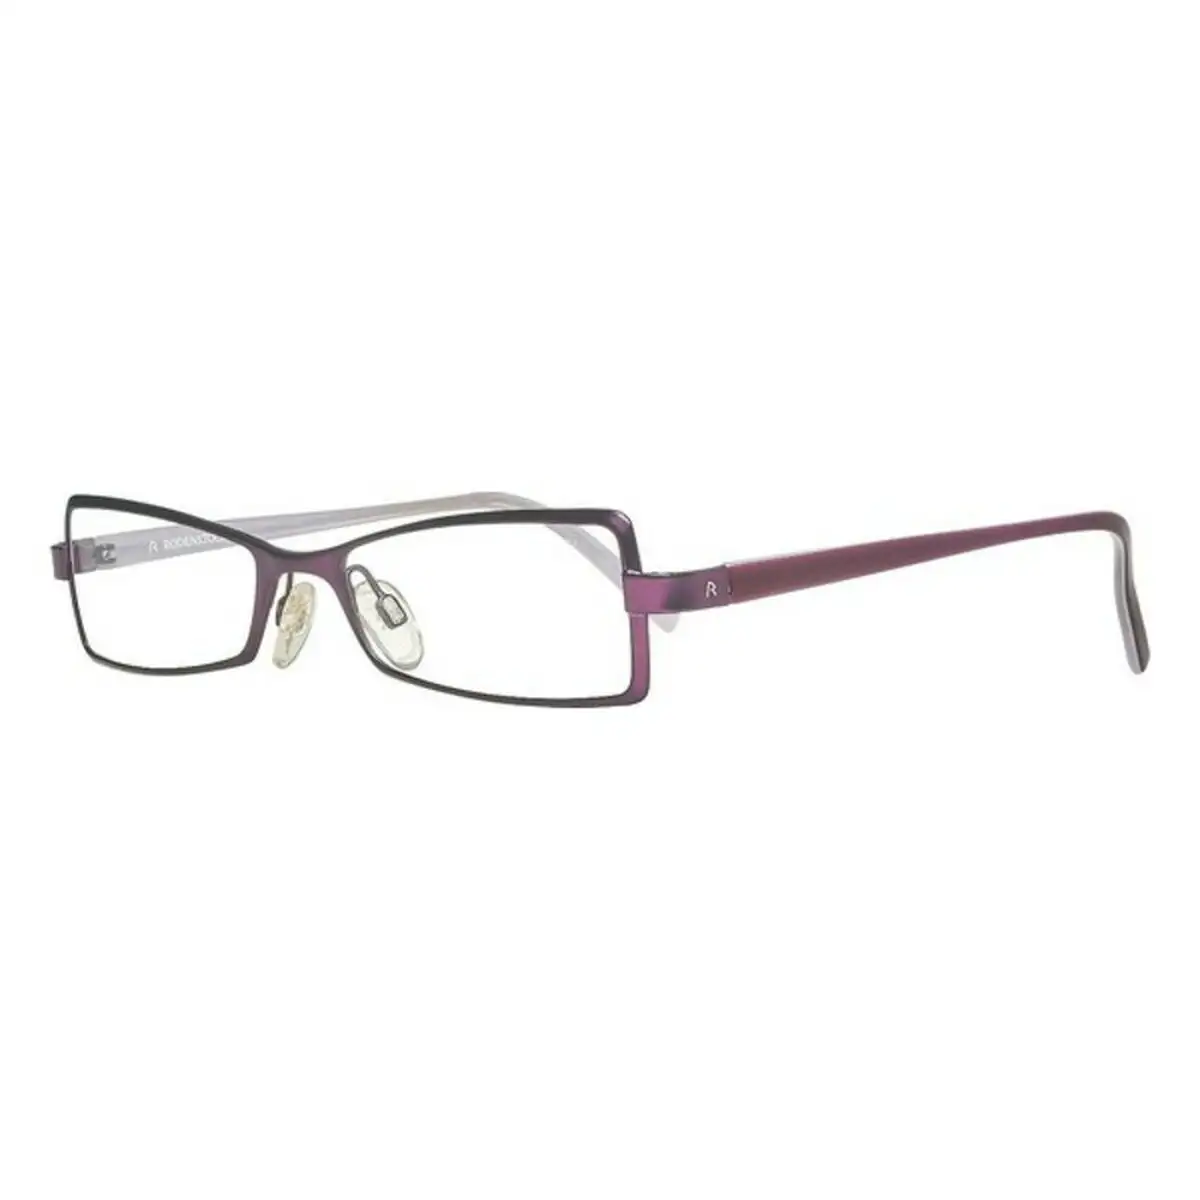 Monture de lunettes femme rodenstock r4701 a o 49 mm _3441. DIAYTAR SENEGAL - Votre Destination pour un Shopping Éclairé. Parcourez notre boutique en ligne pour découvrir des produits de qualité qui embelliront votre quotidien.